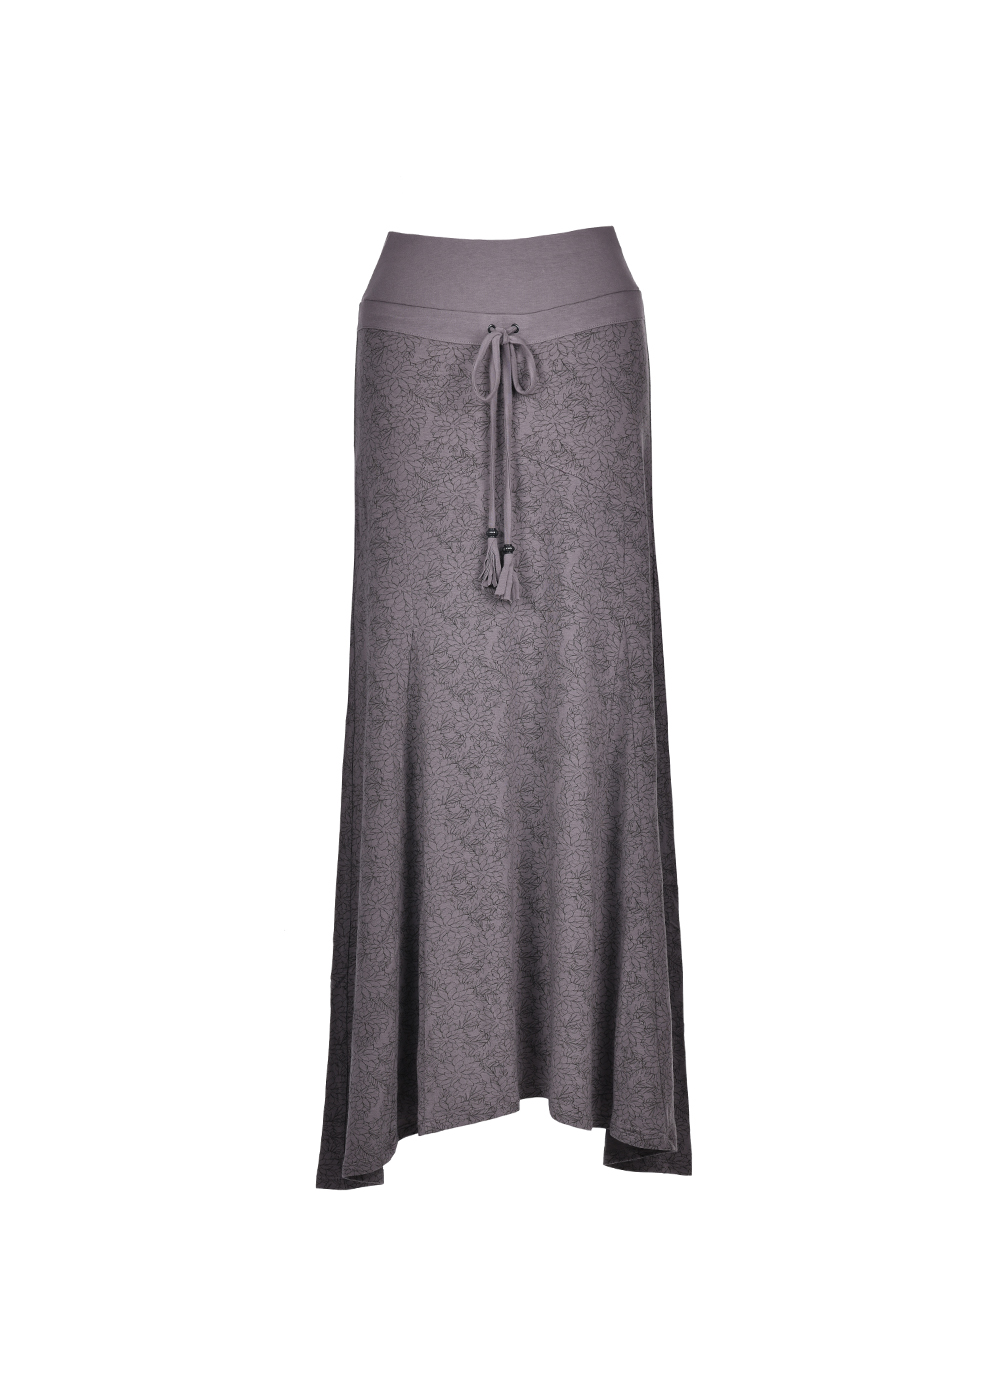 Wildflower Skirt - NHW - Nomads Hemp Wear